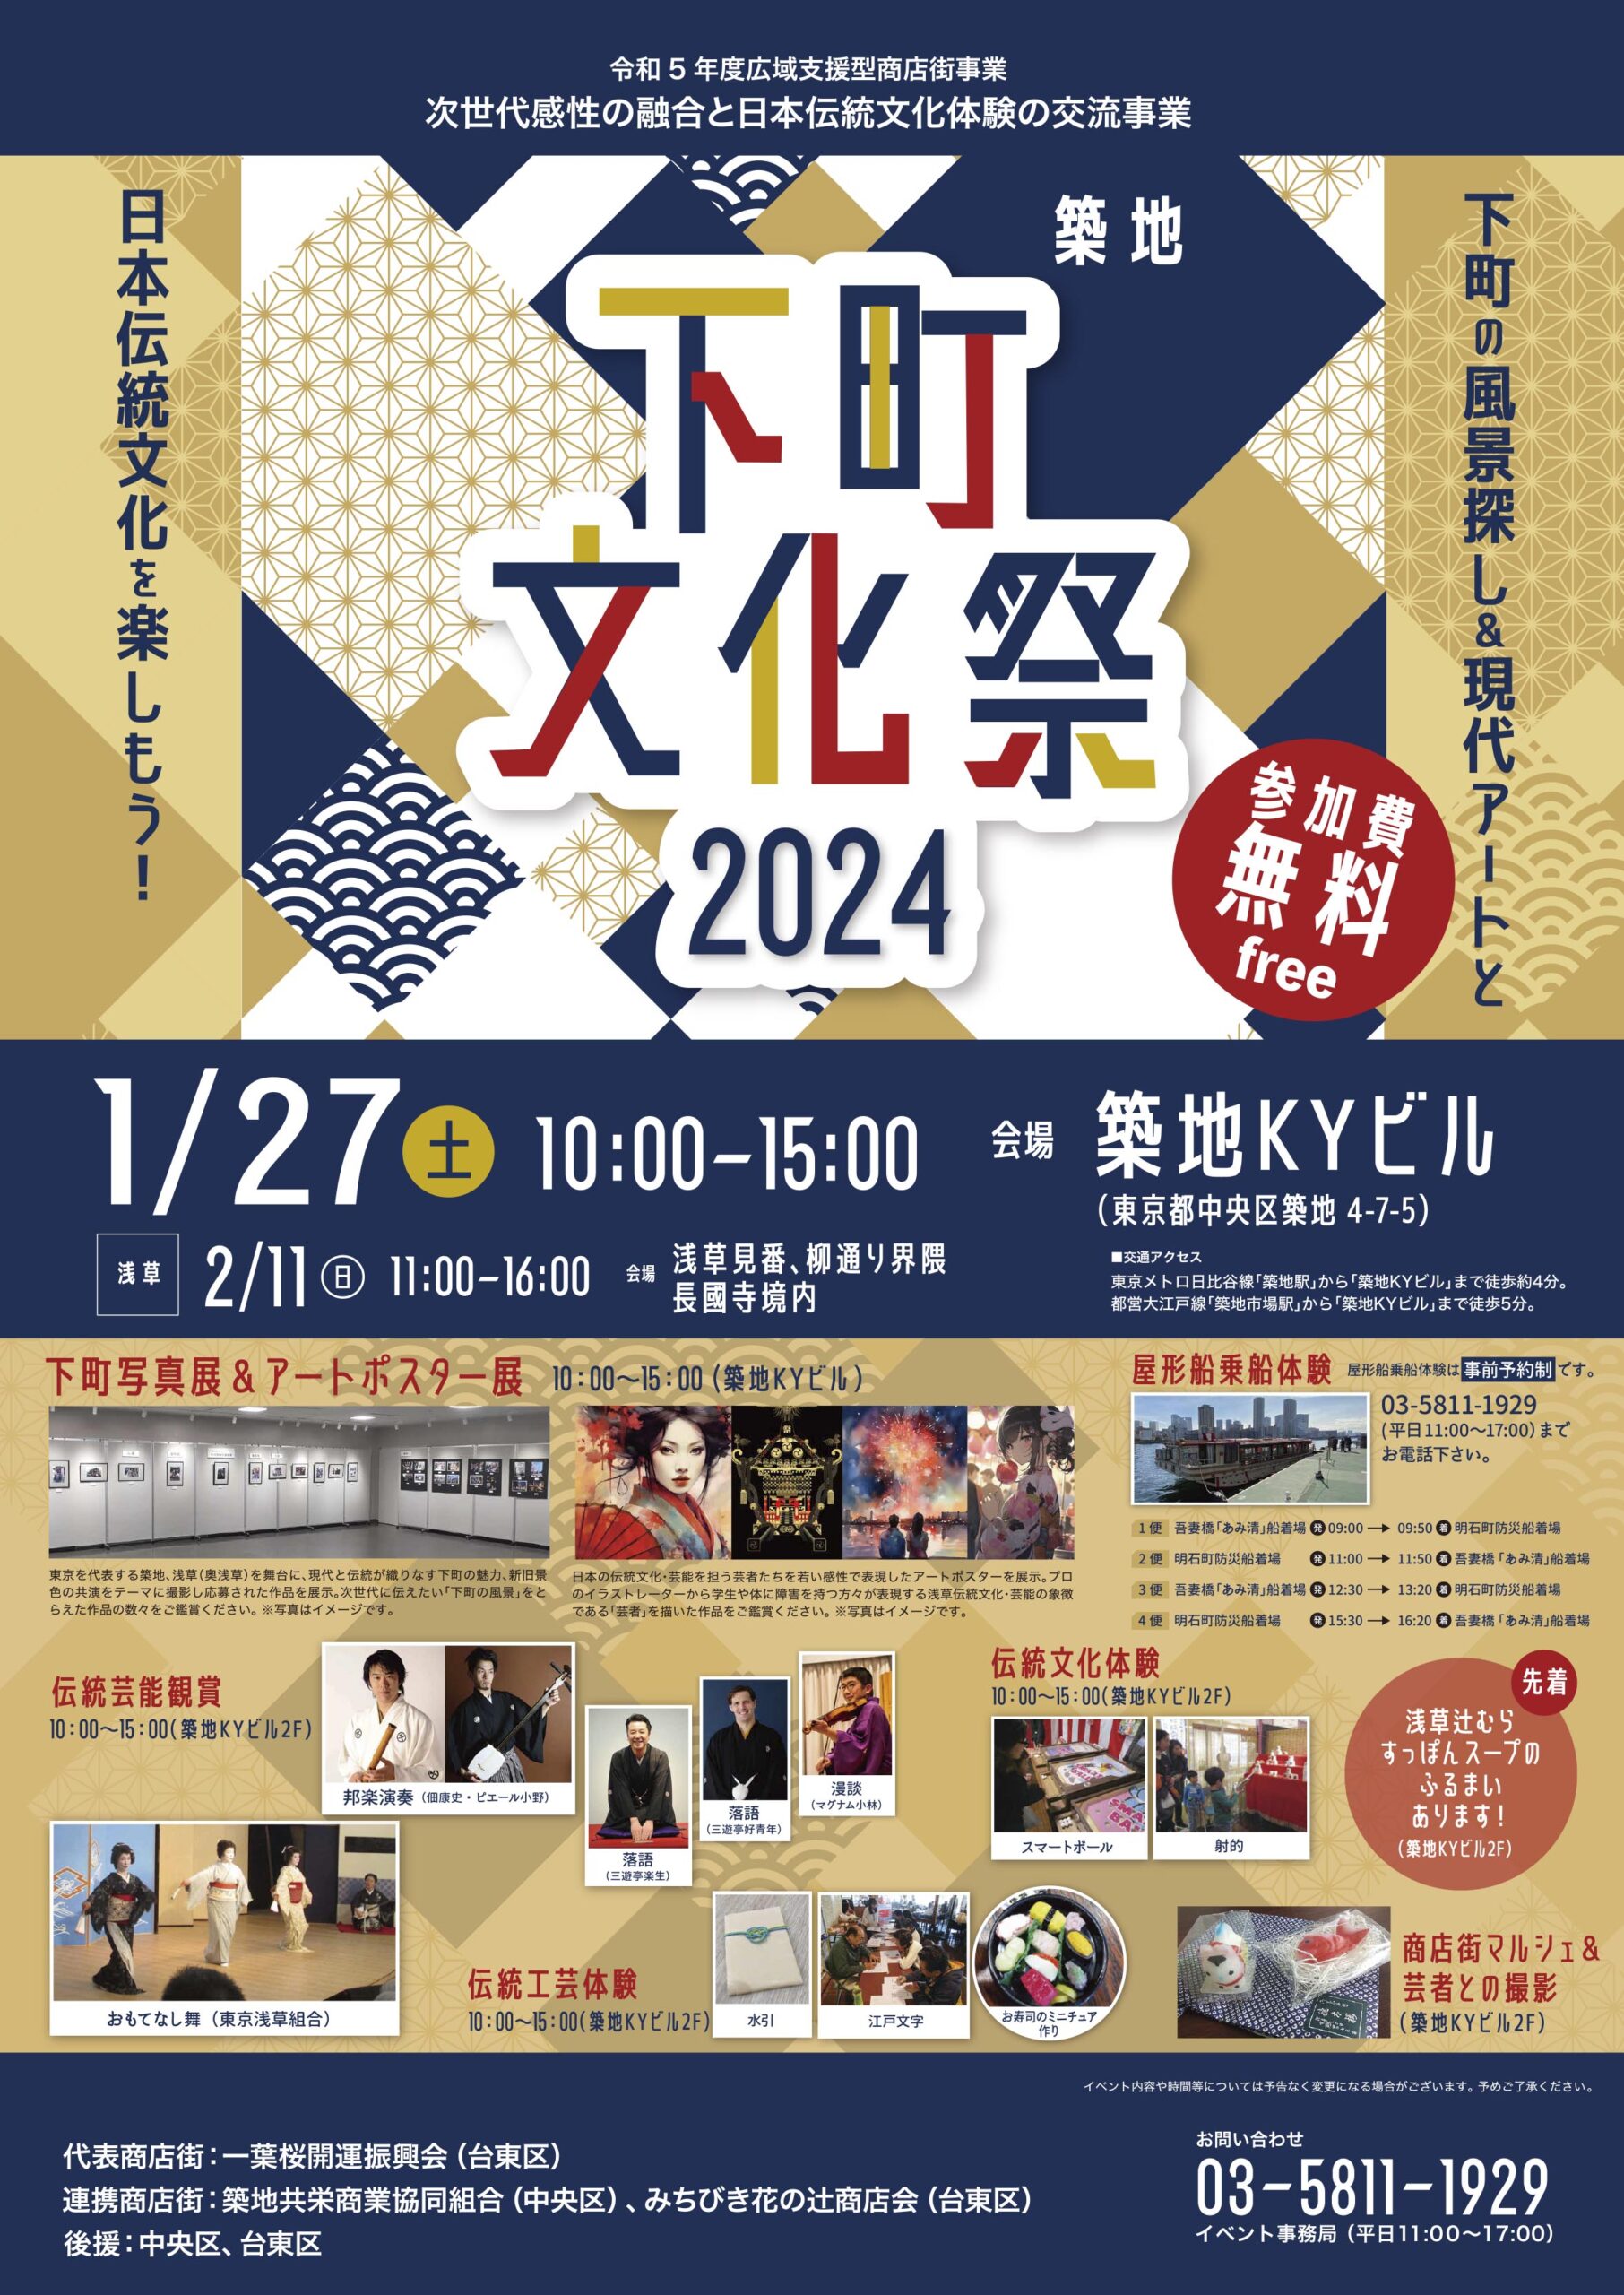 浅草の商店街と合同で行うイベント『下町文化祭2024』は、 同じ下町という縁で手を組み、合同で賑やかなイベントメニューを豊富にご用意しています。